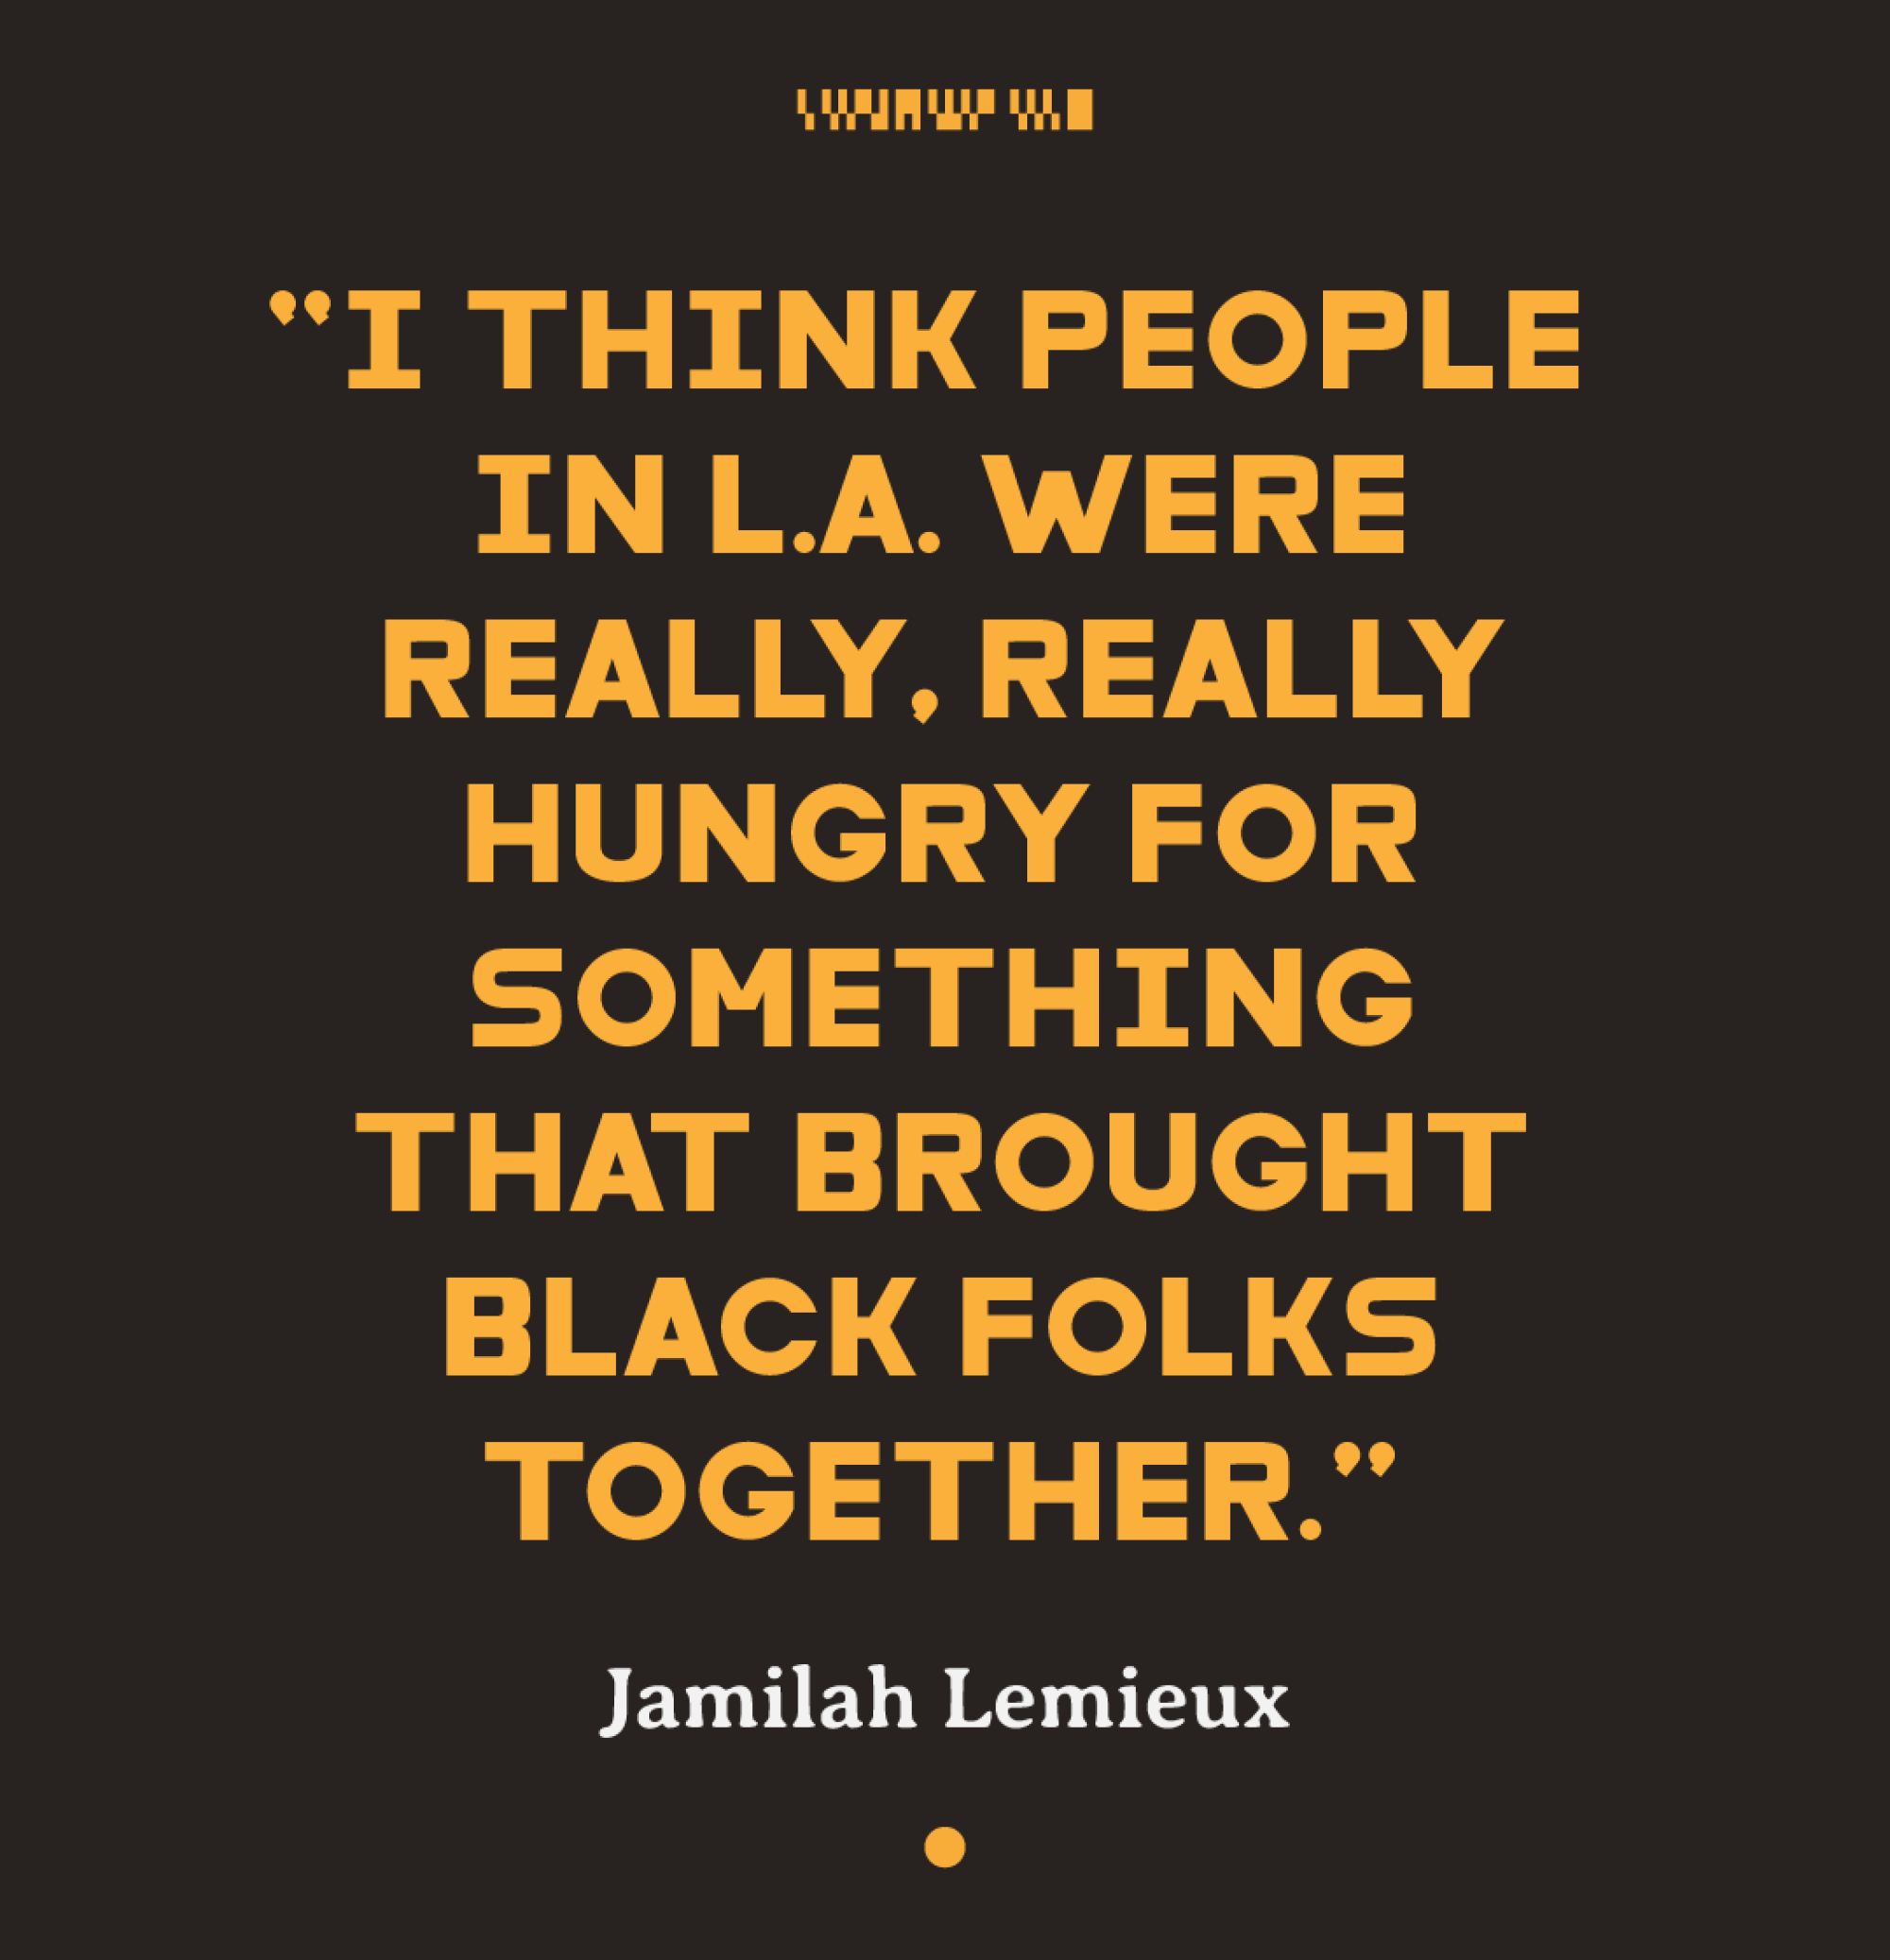 Voici la citation de Jamilah Lemieux